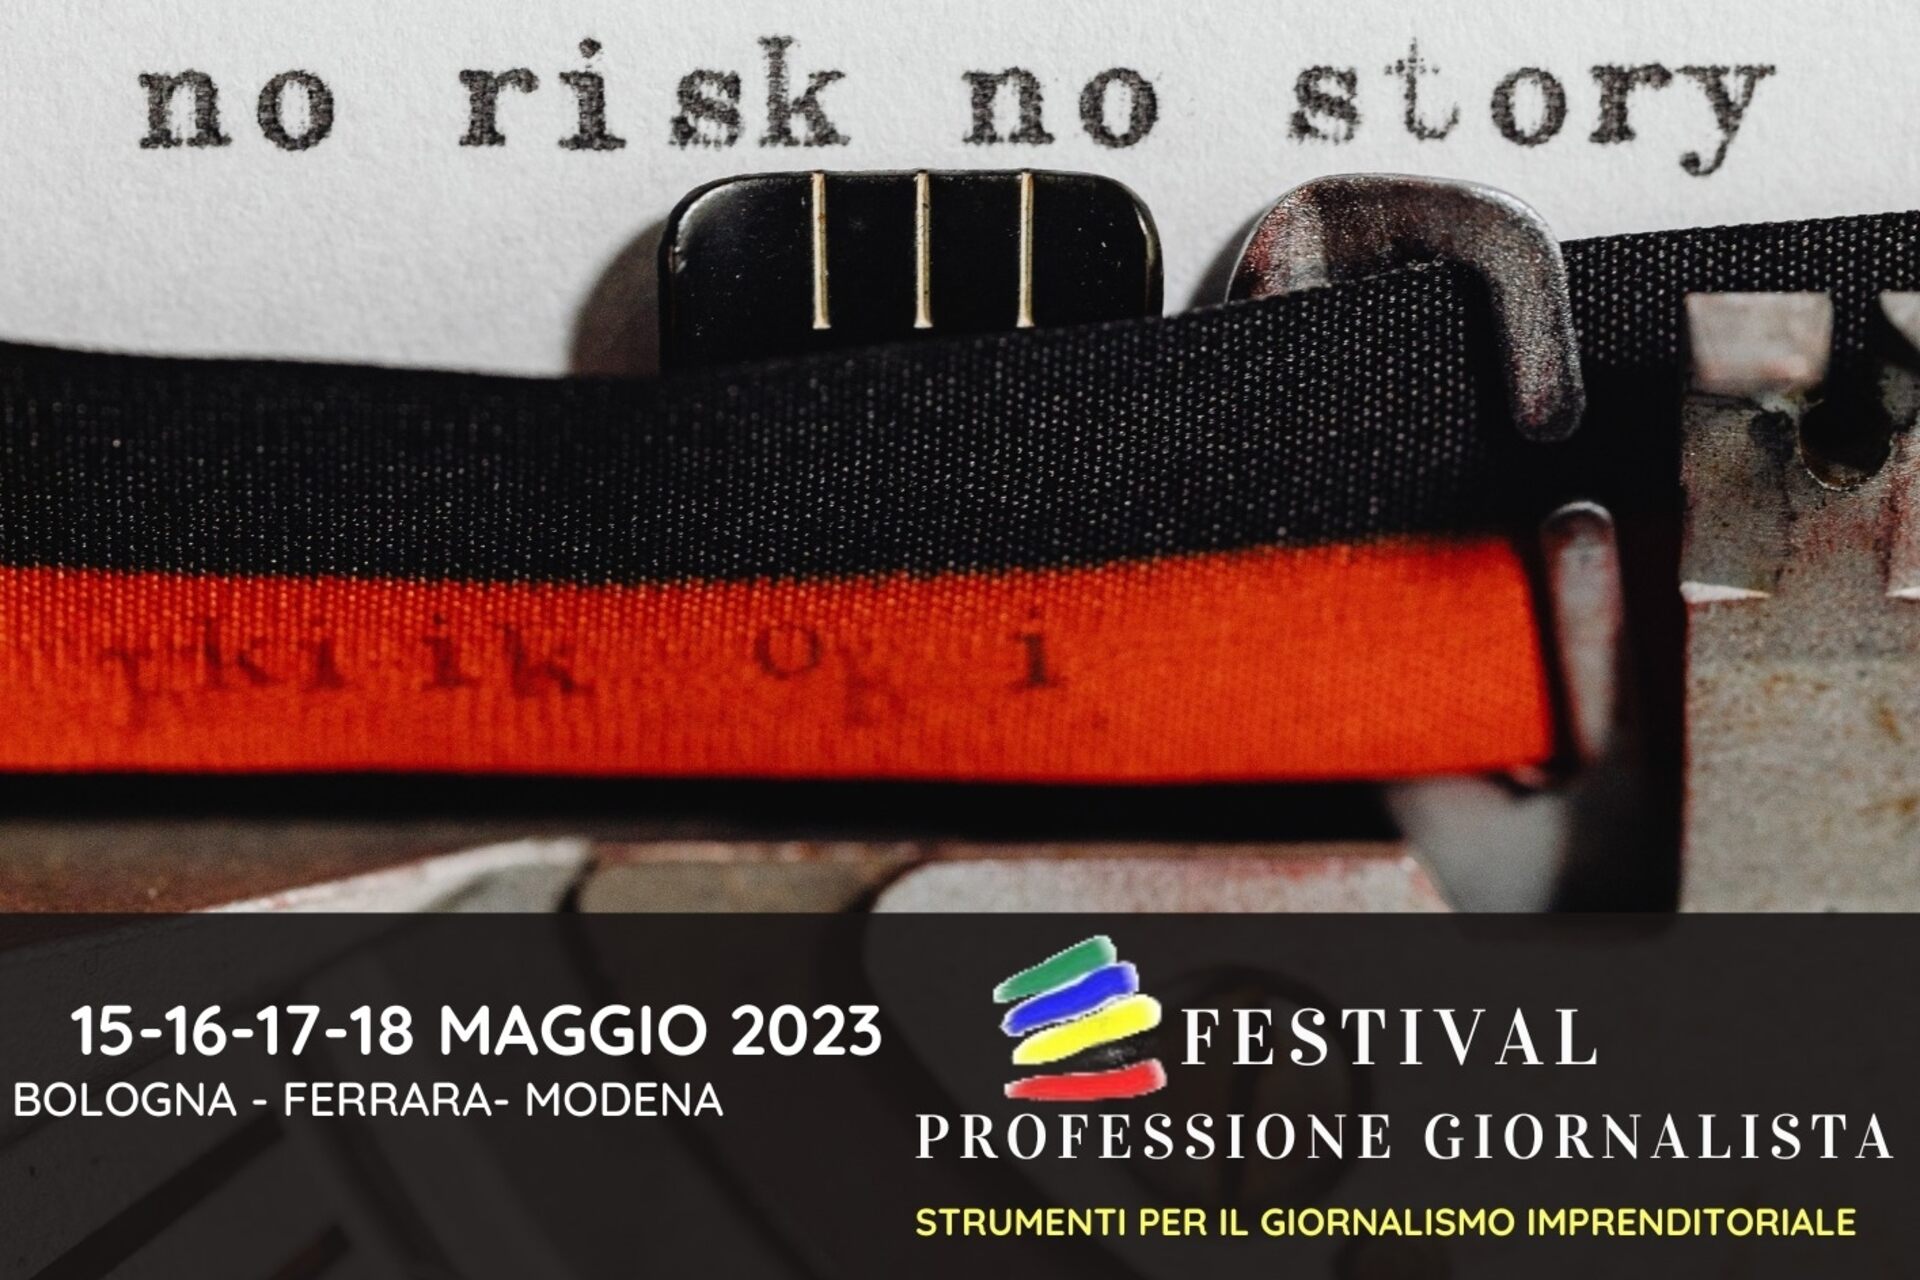 Nghề nhà báo: key visual của lễ hội "Professione Giornalista" phiên bản 2023 (Bologna, Ferrara, Modena, 15-16-17-18/XNUMX)